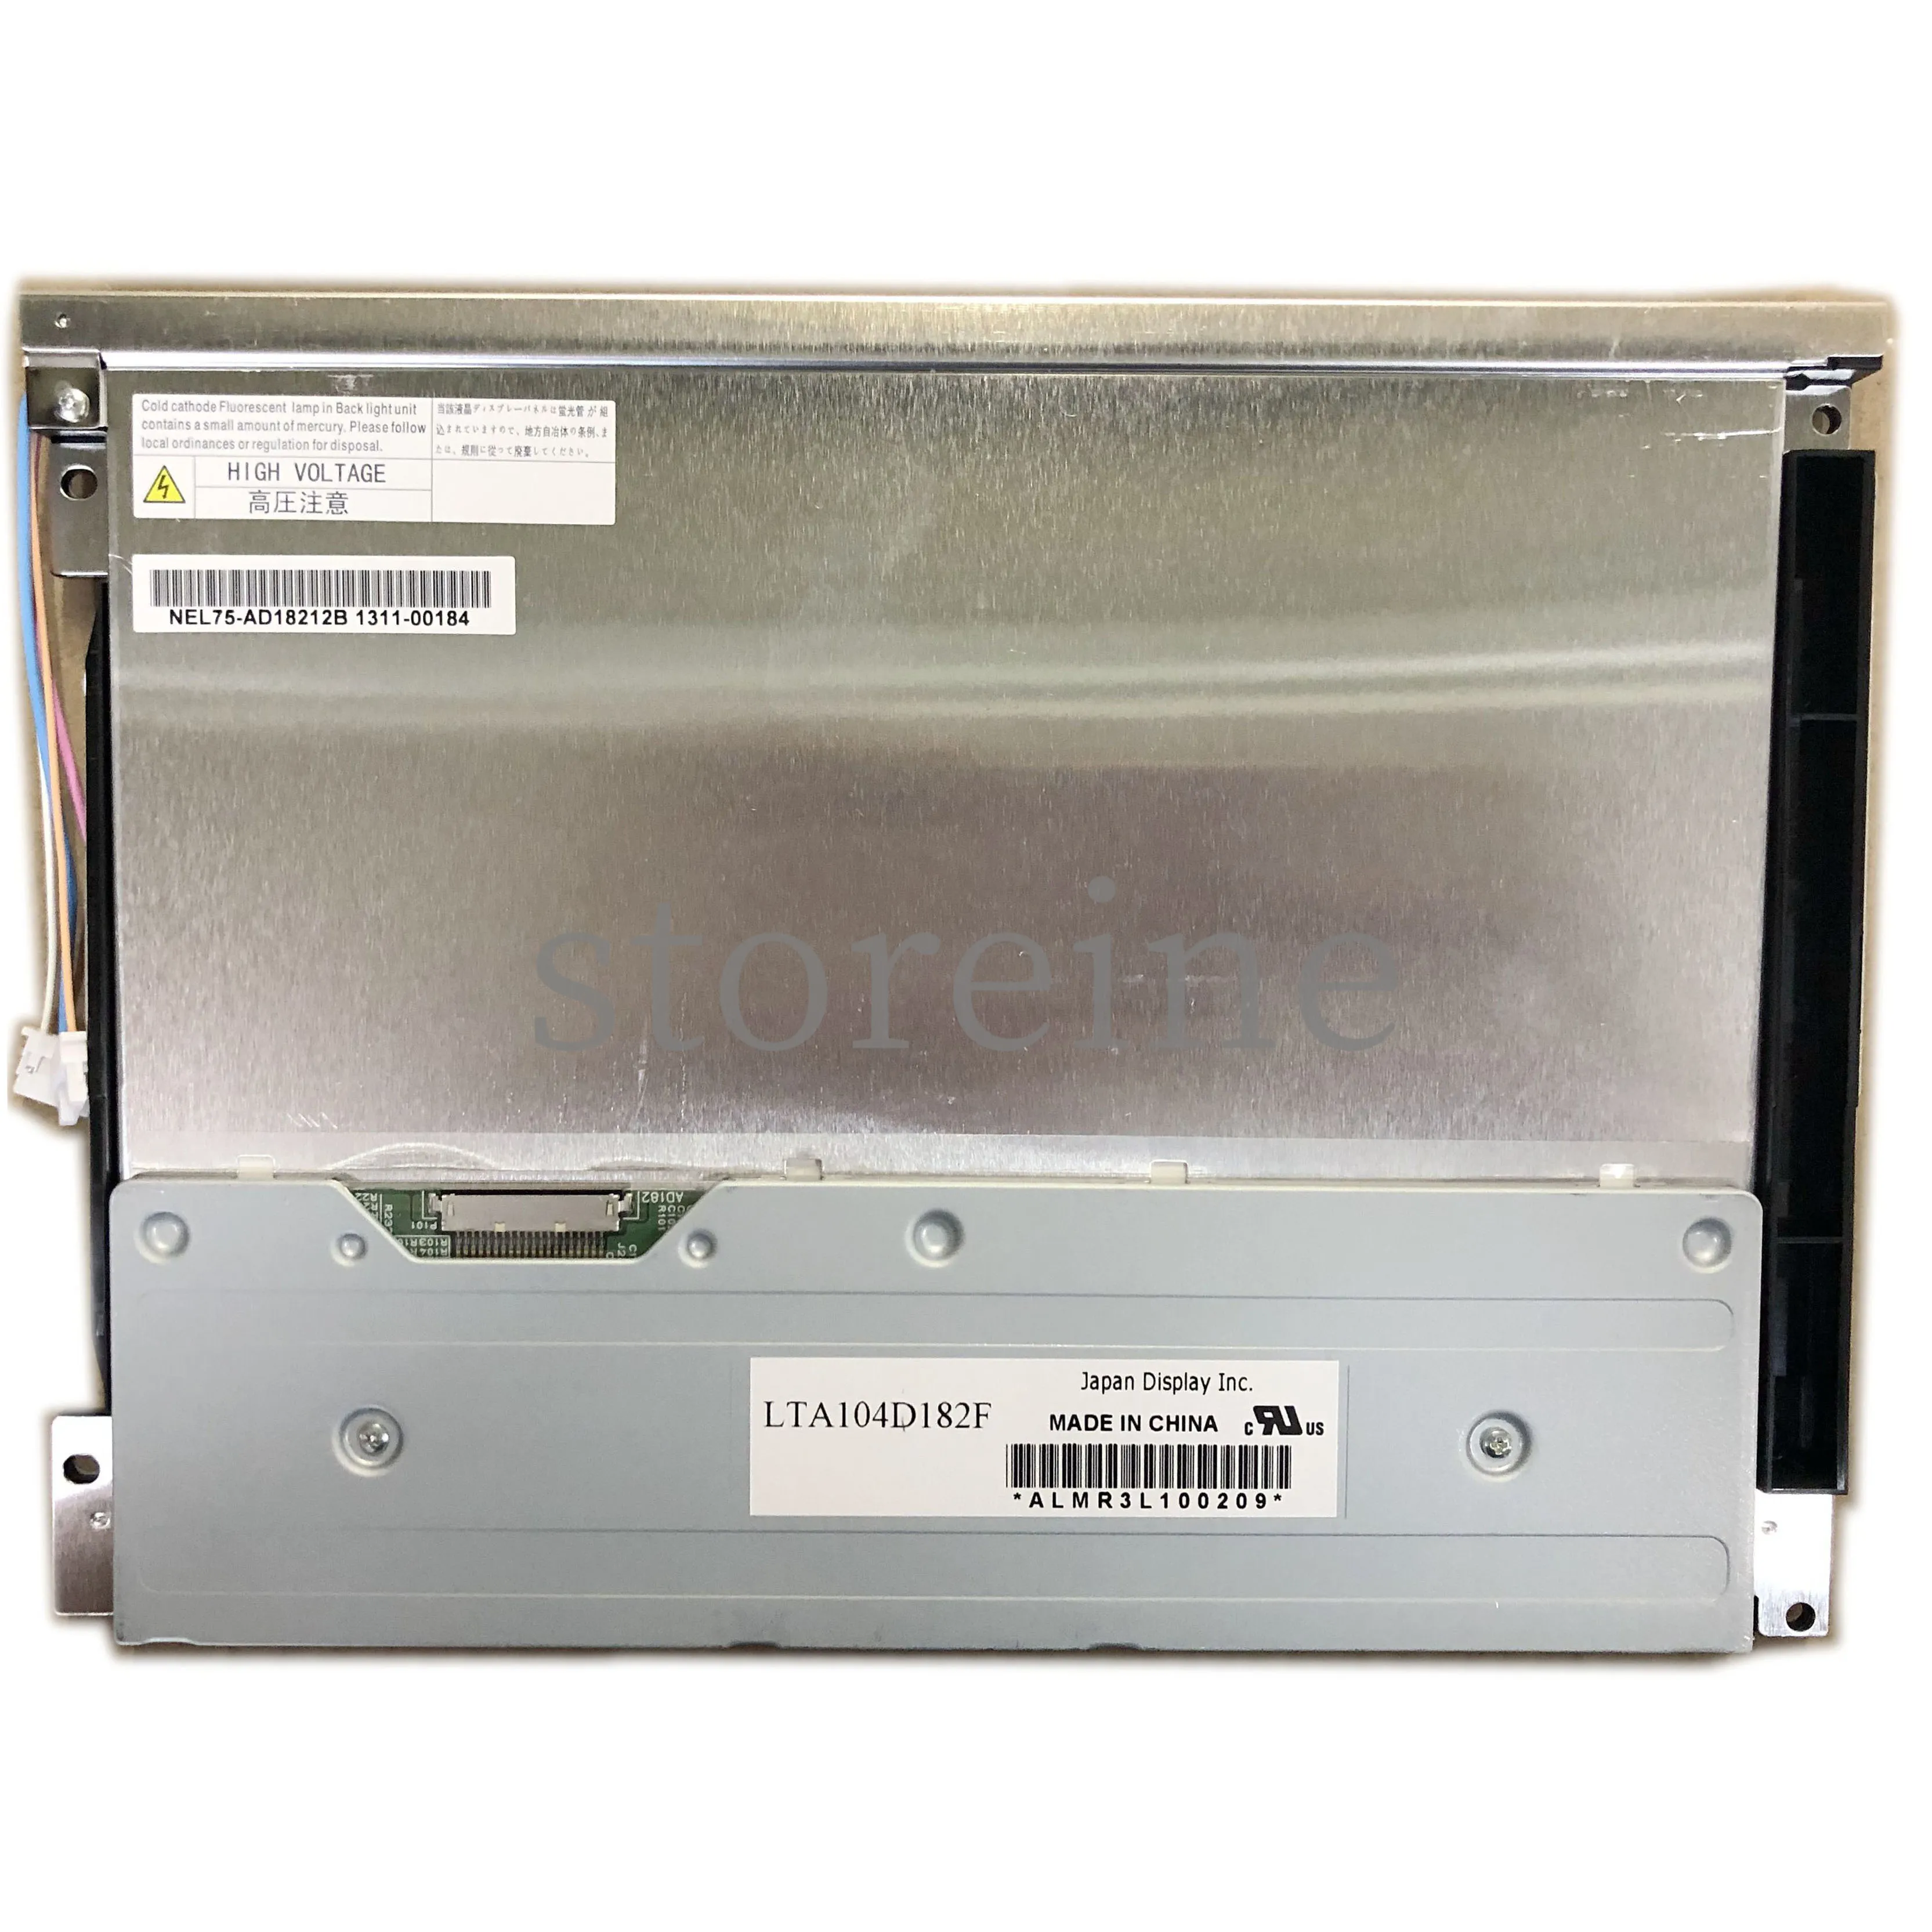 LTA104D182F Originalkvalitet 10,4 tum TFT 800 600 LCD -skärm för industriell applikation